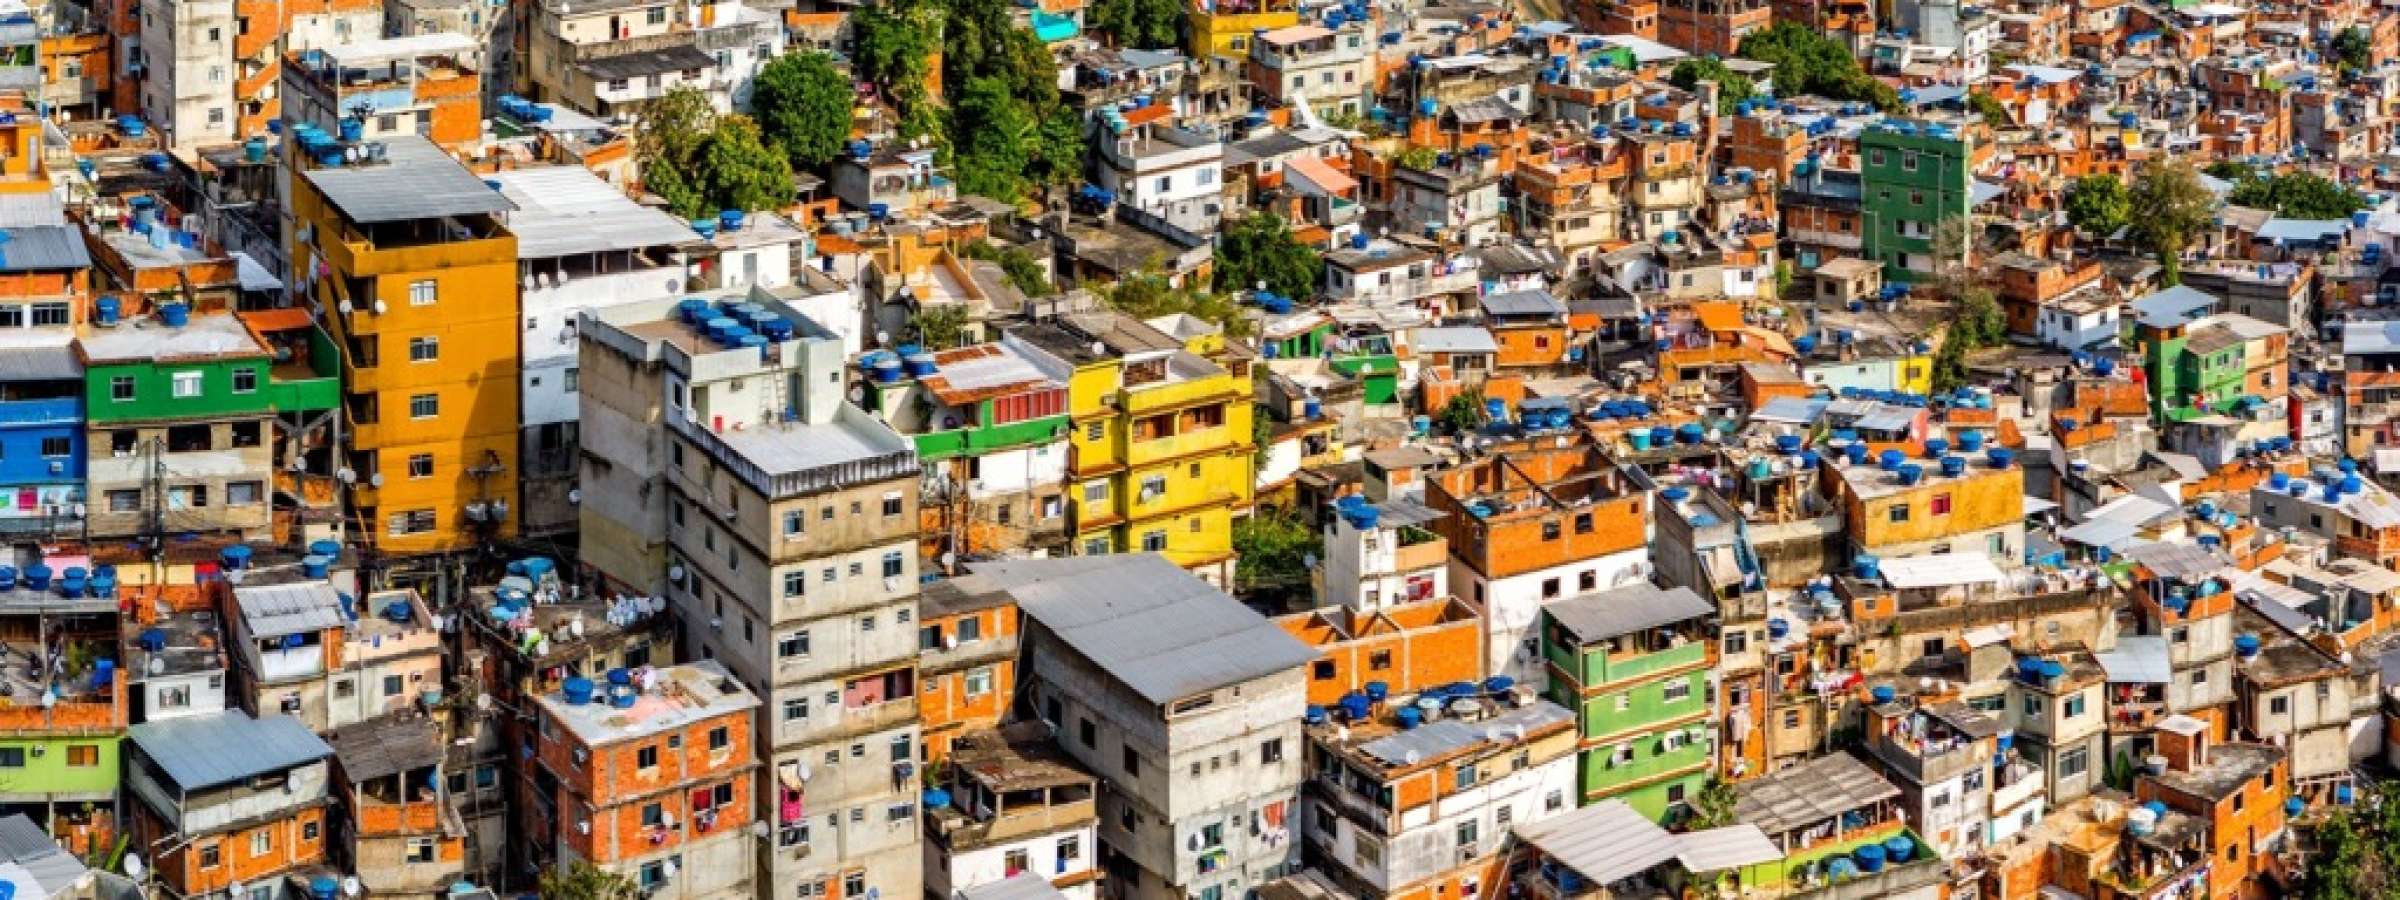 Aerial view of Rio's Rocinha favela